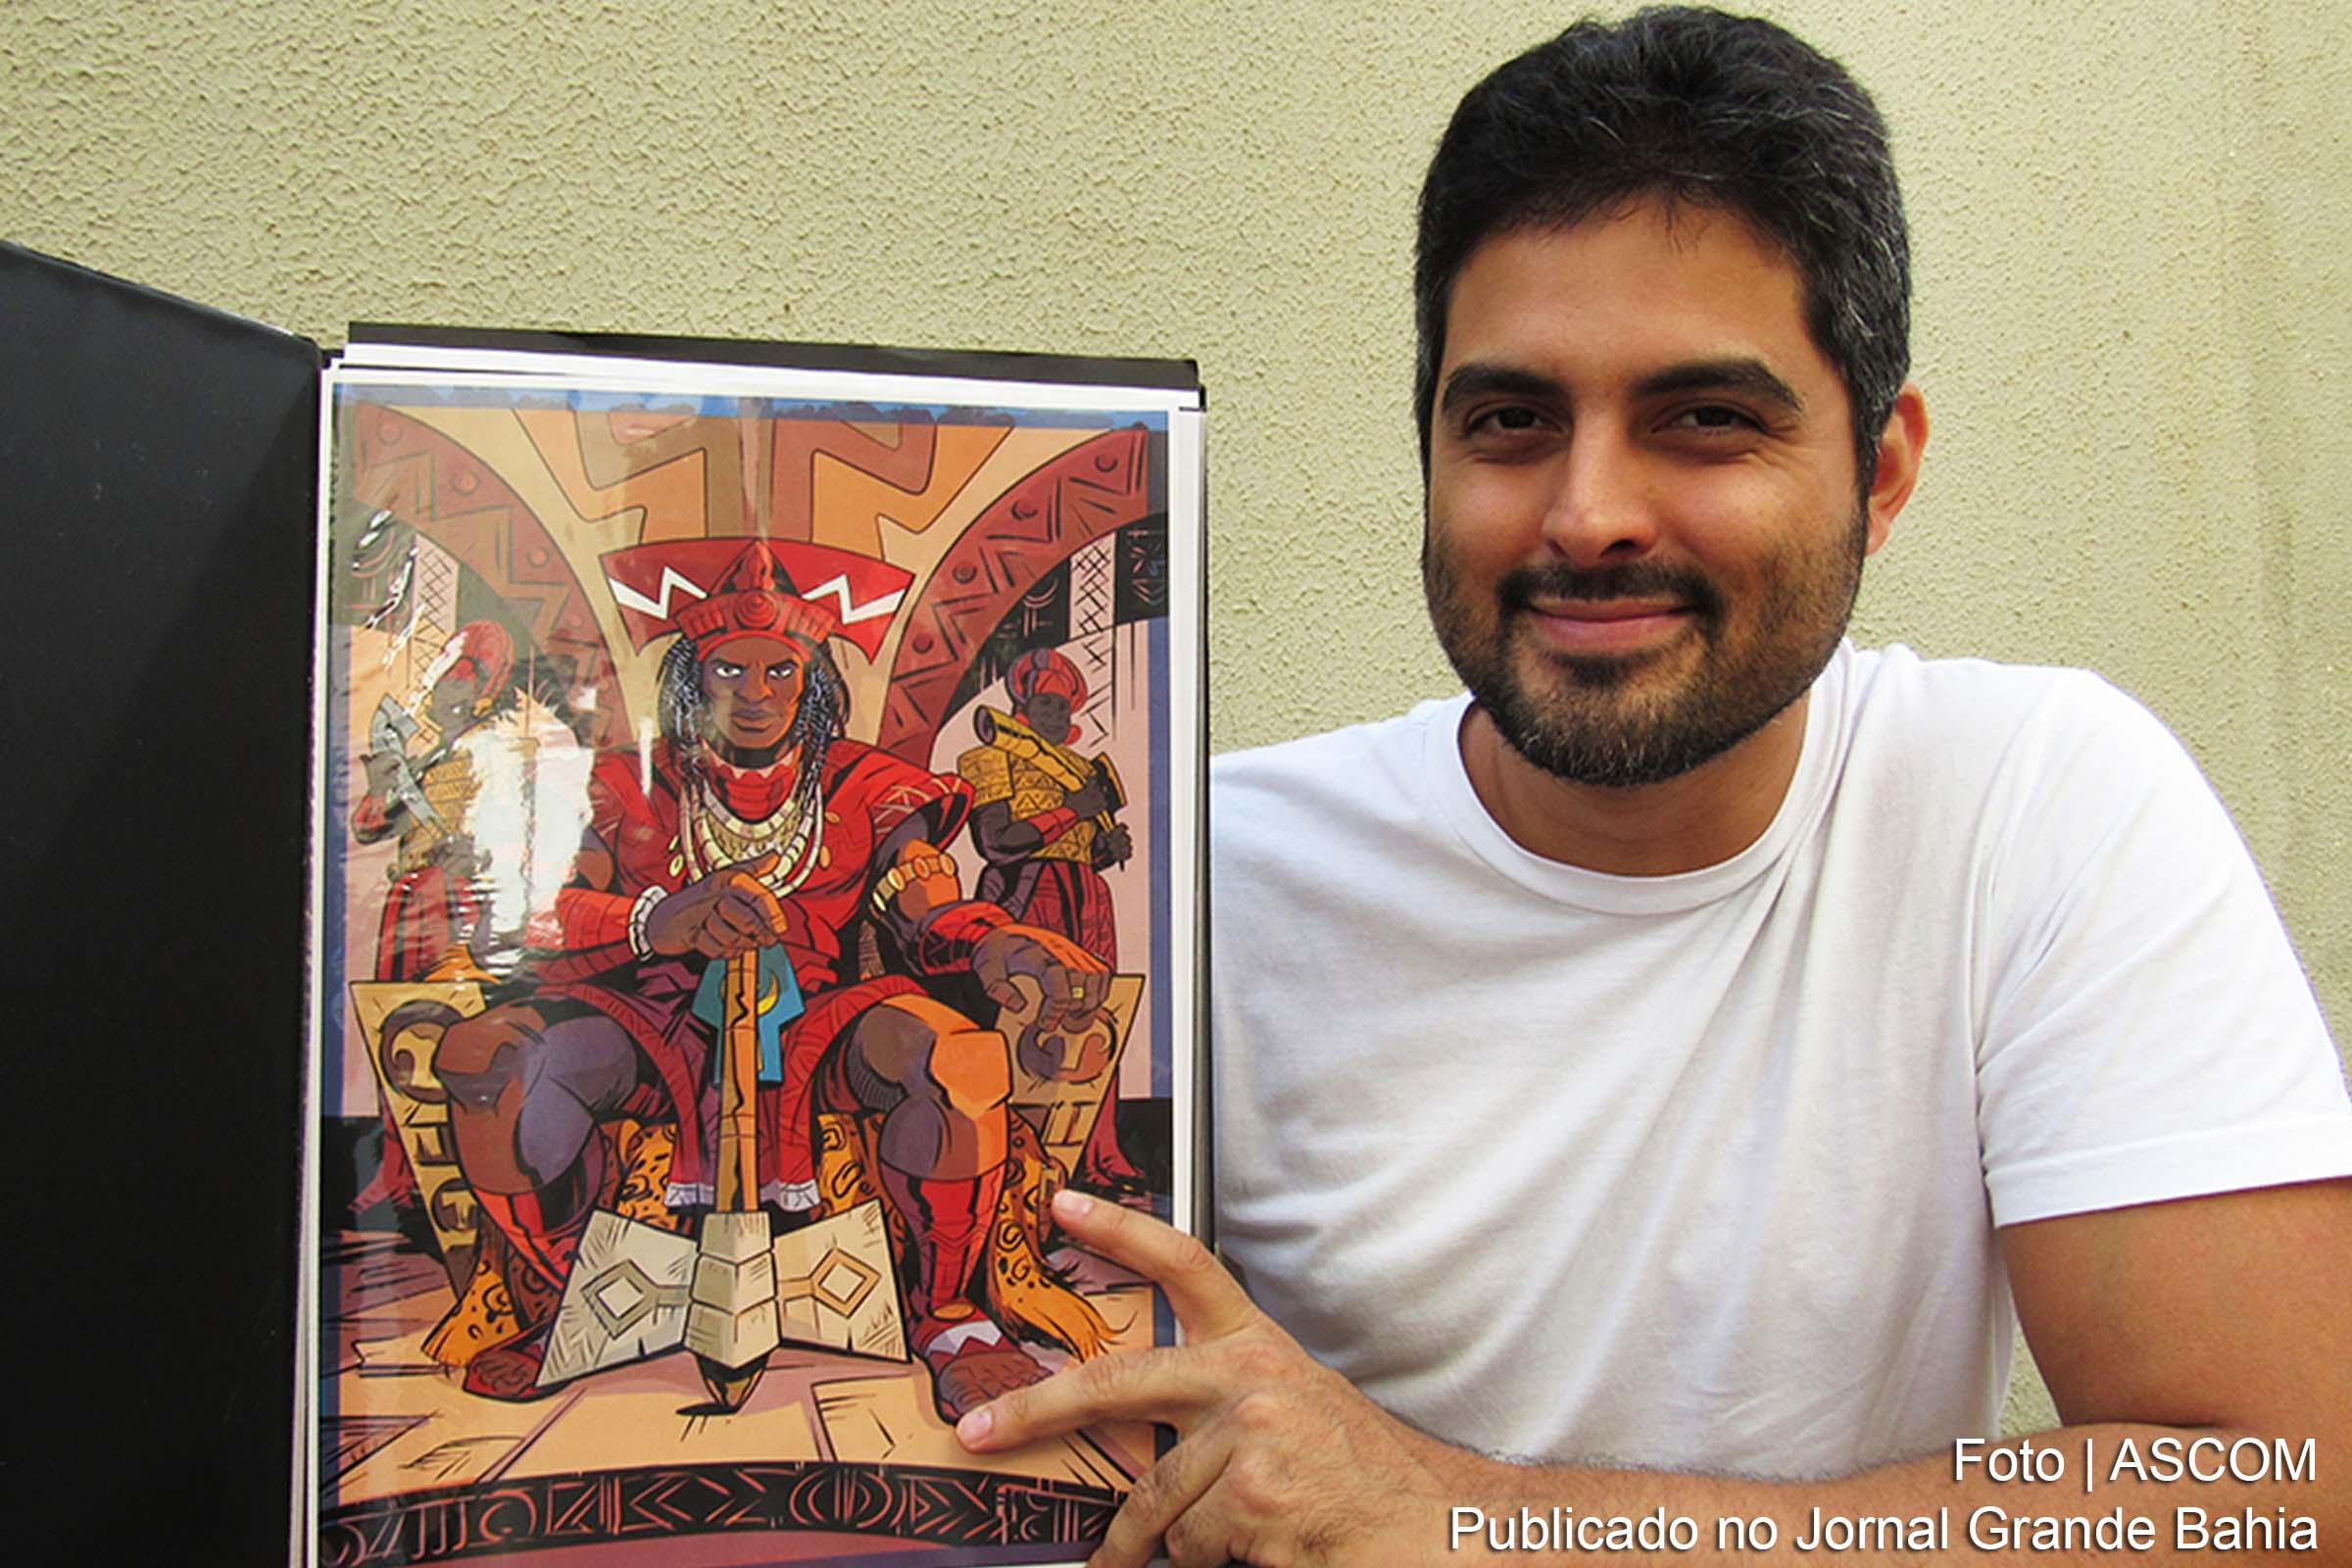 Hugo Canuto é um arquiteto, ilustrador e quadrinista brasileiro. Em 2015, lançou de forma independente, no Festival Internacional de Quadrinhos de Belo Horizonte, a HQ A Canção de Mayrube – O Início, inspirada nas mitologias dos Povos da América.